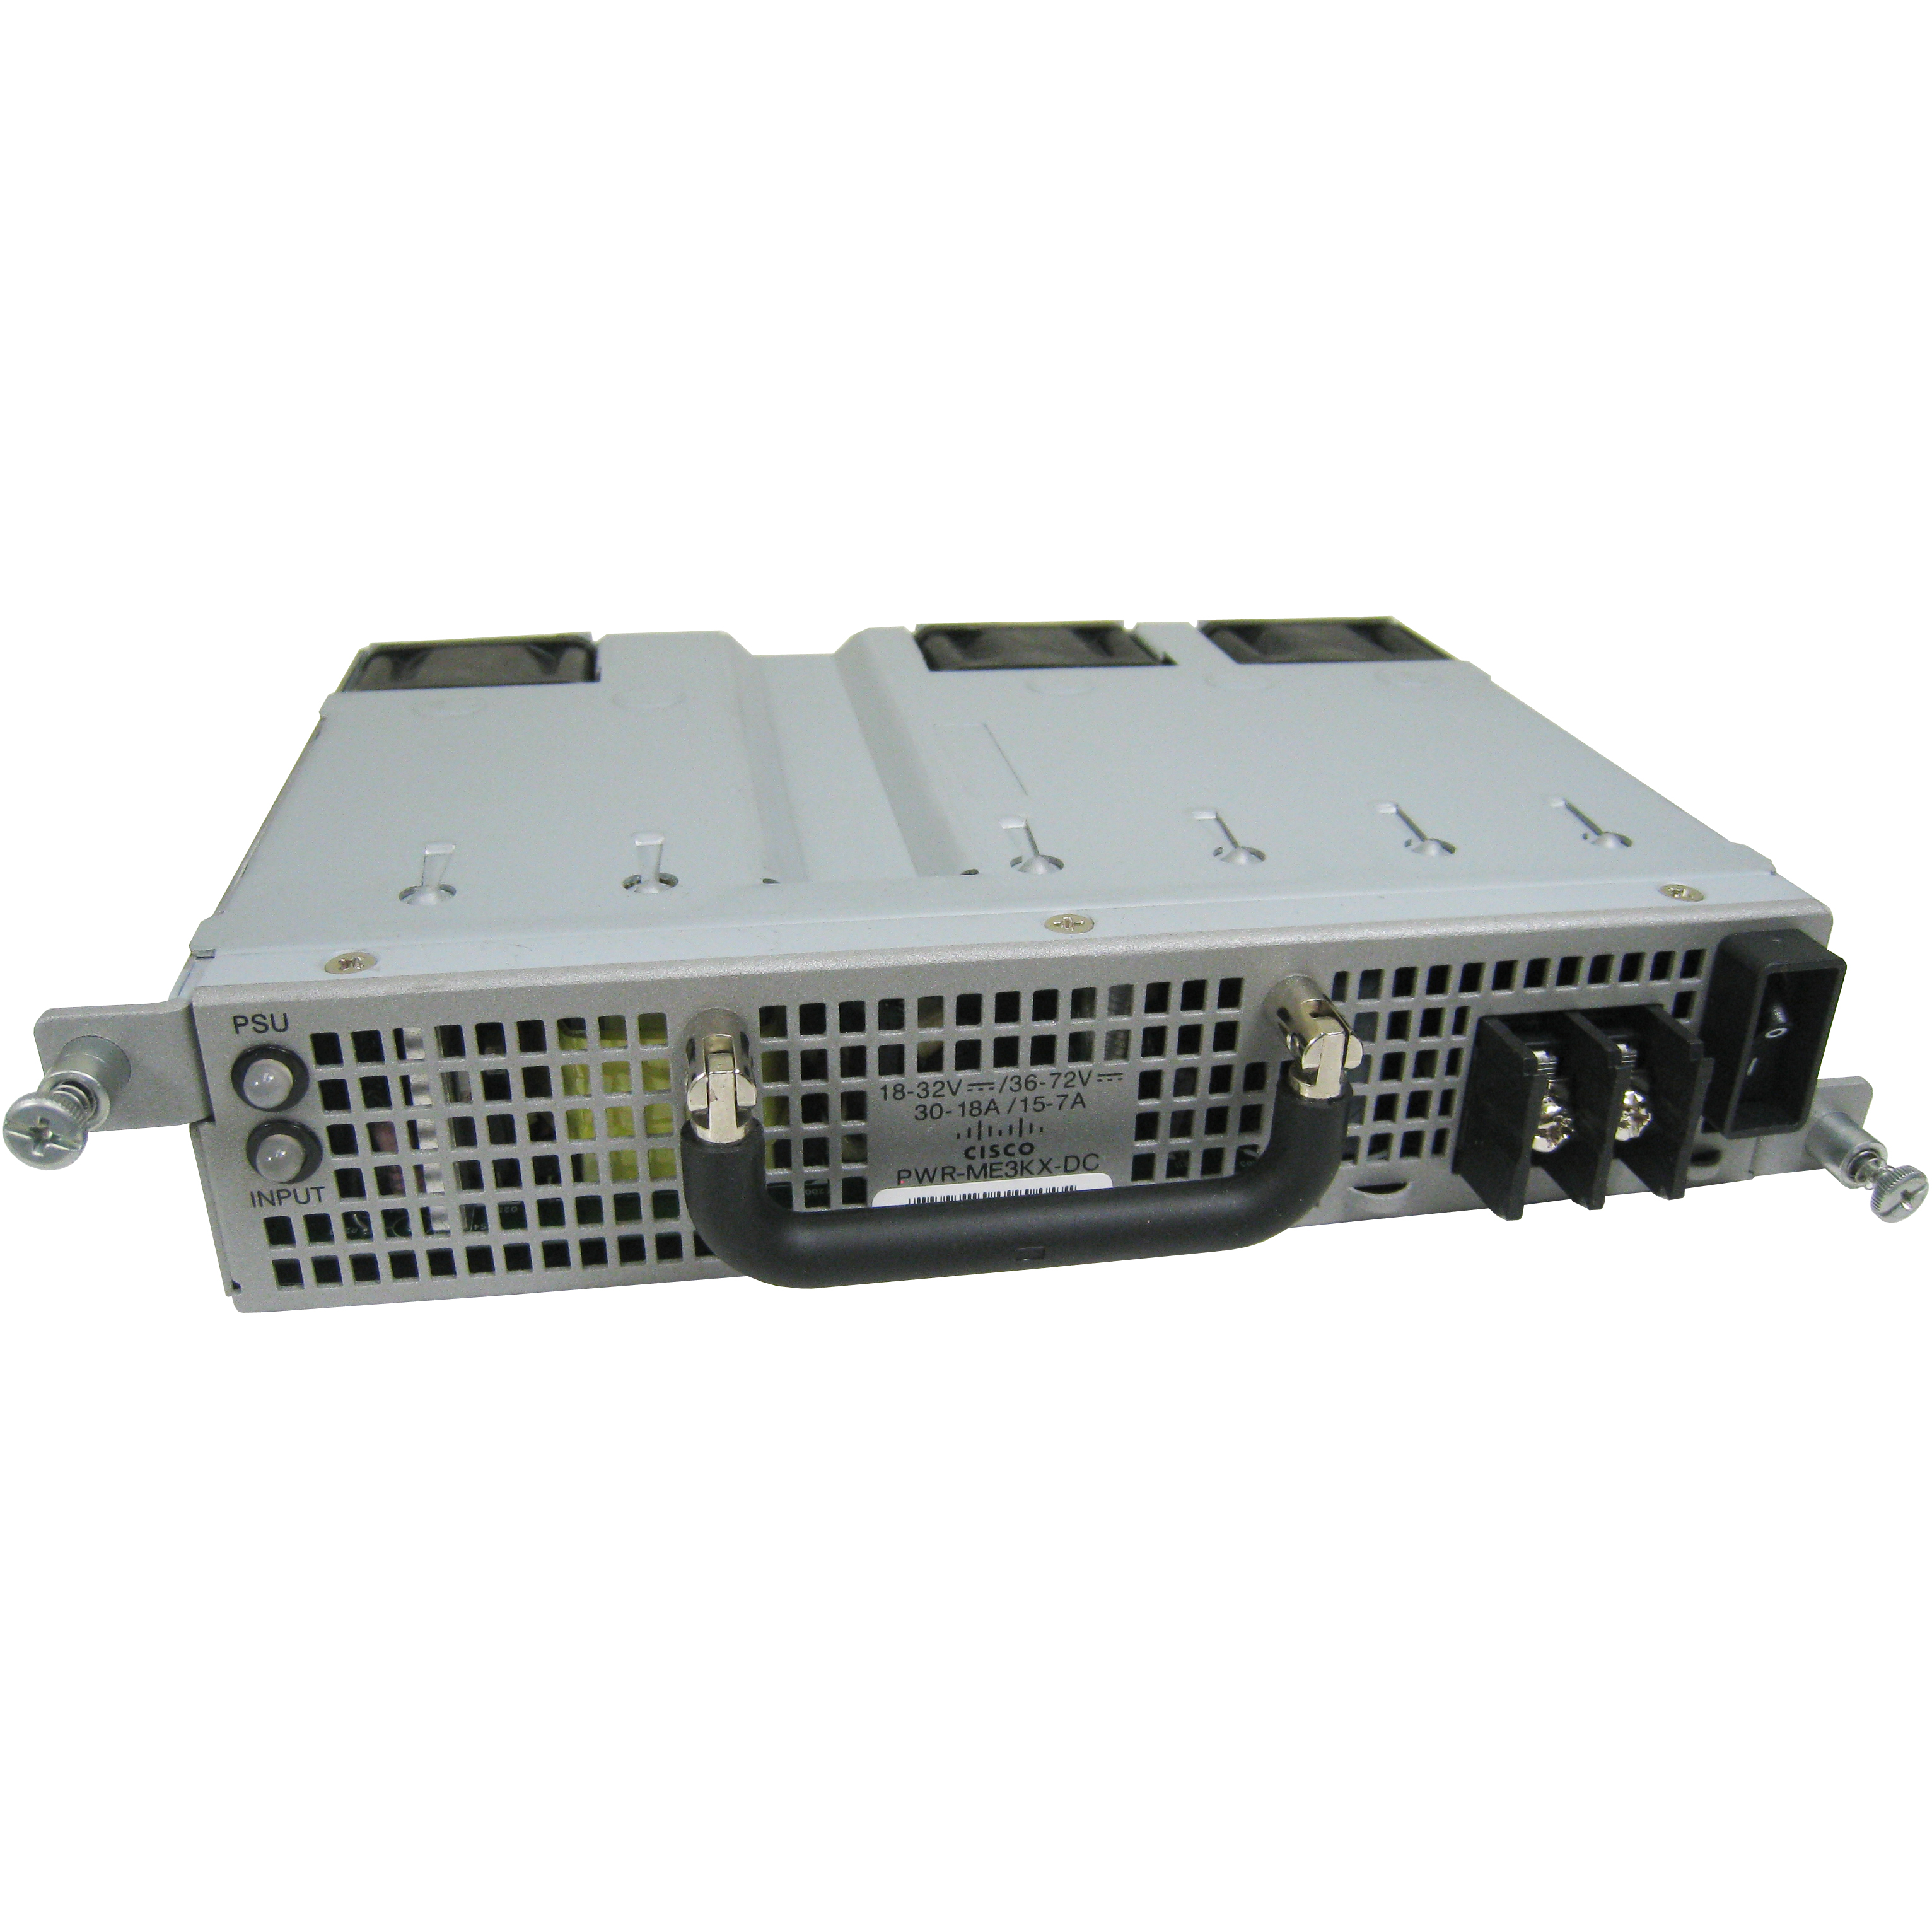 Cisco PWR-ME3KX-DC